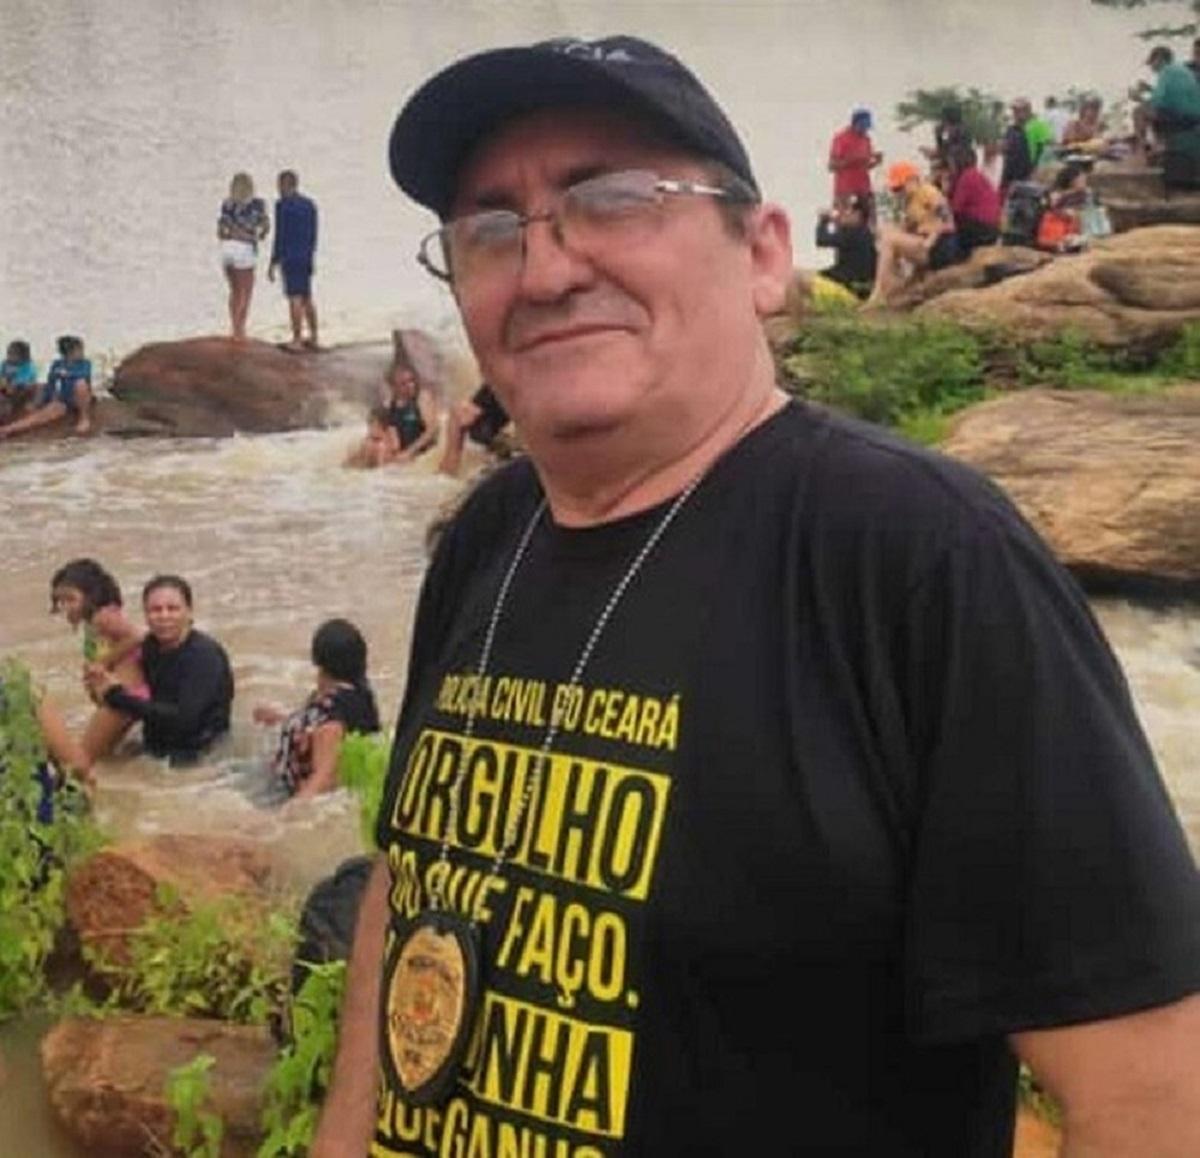 Escrivão morto com tiro na nuca em Tauá, no Ceará